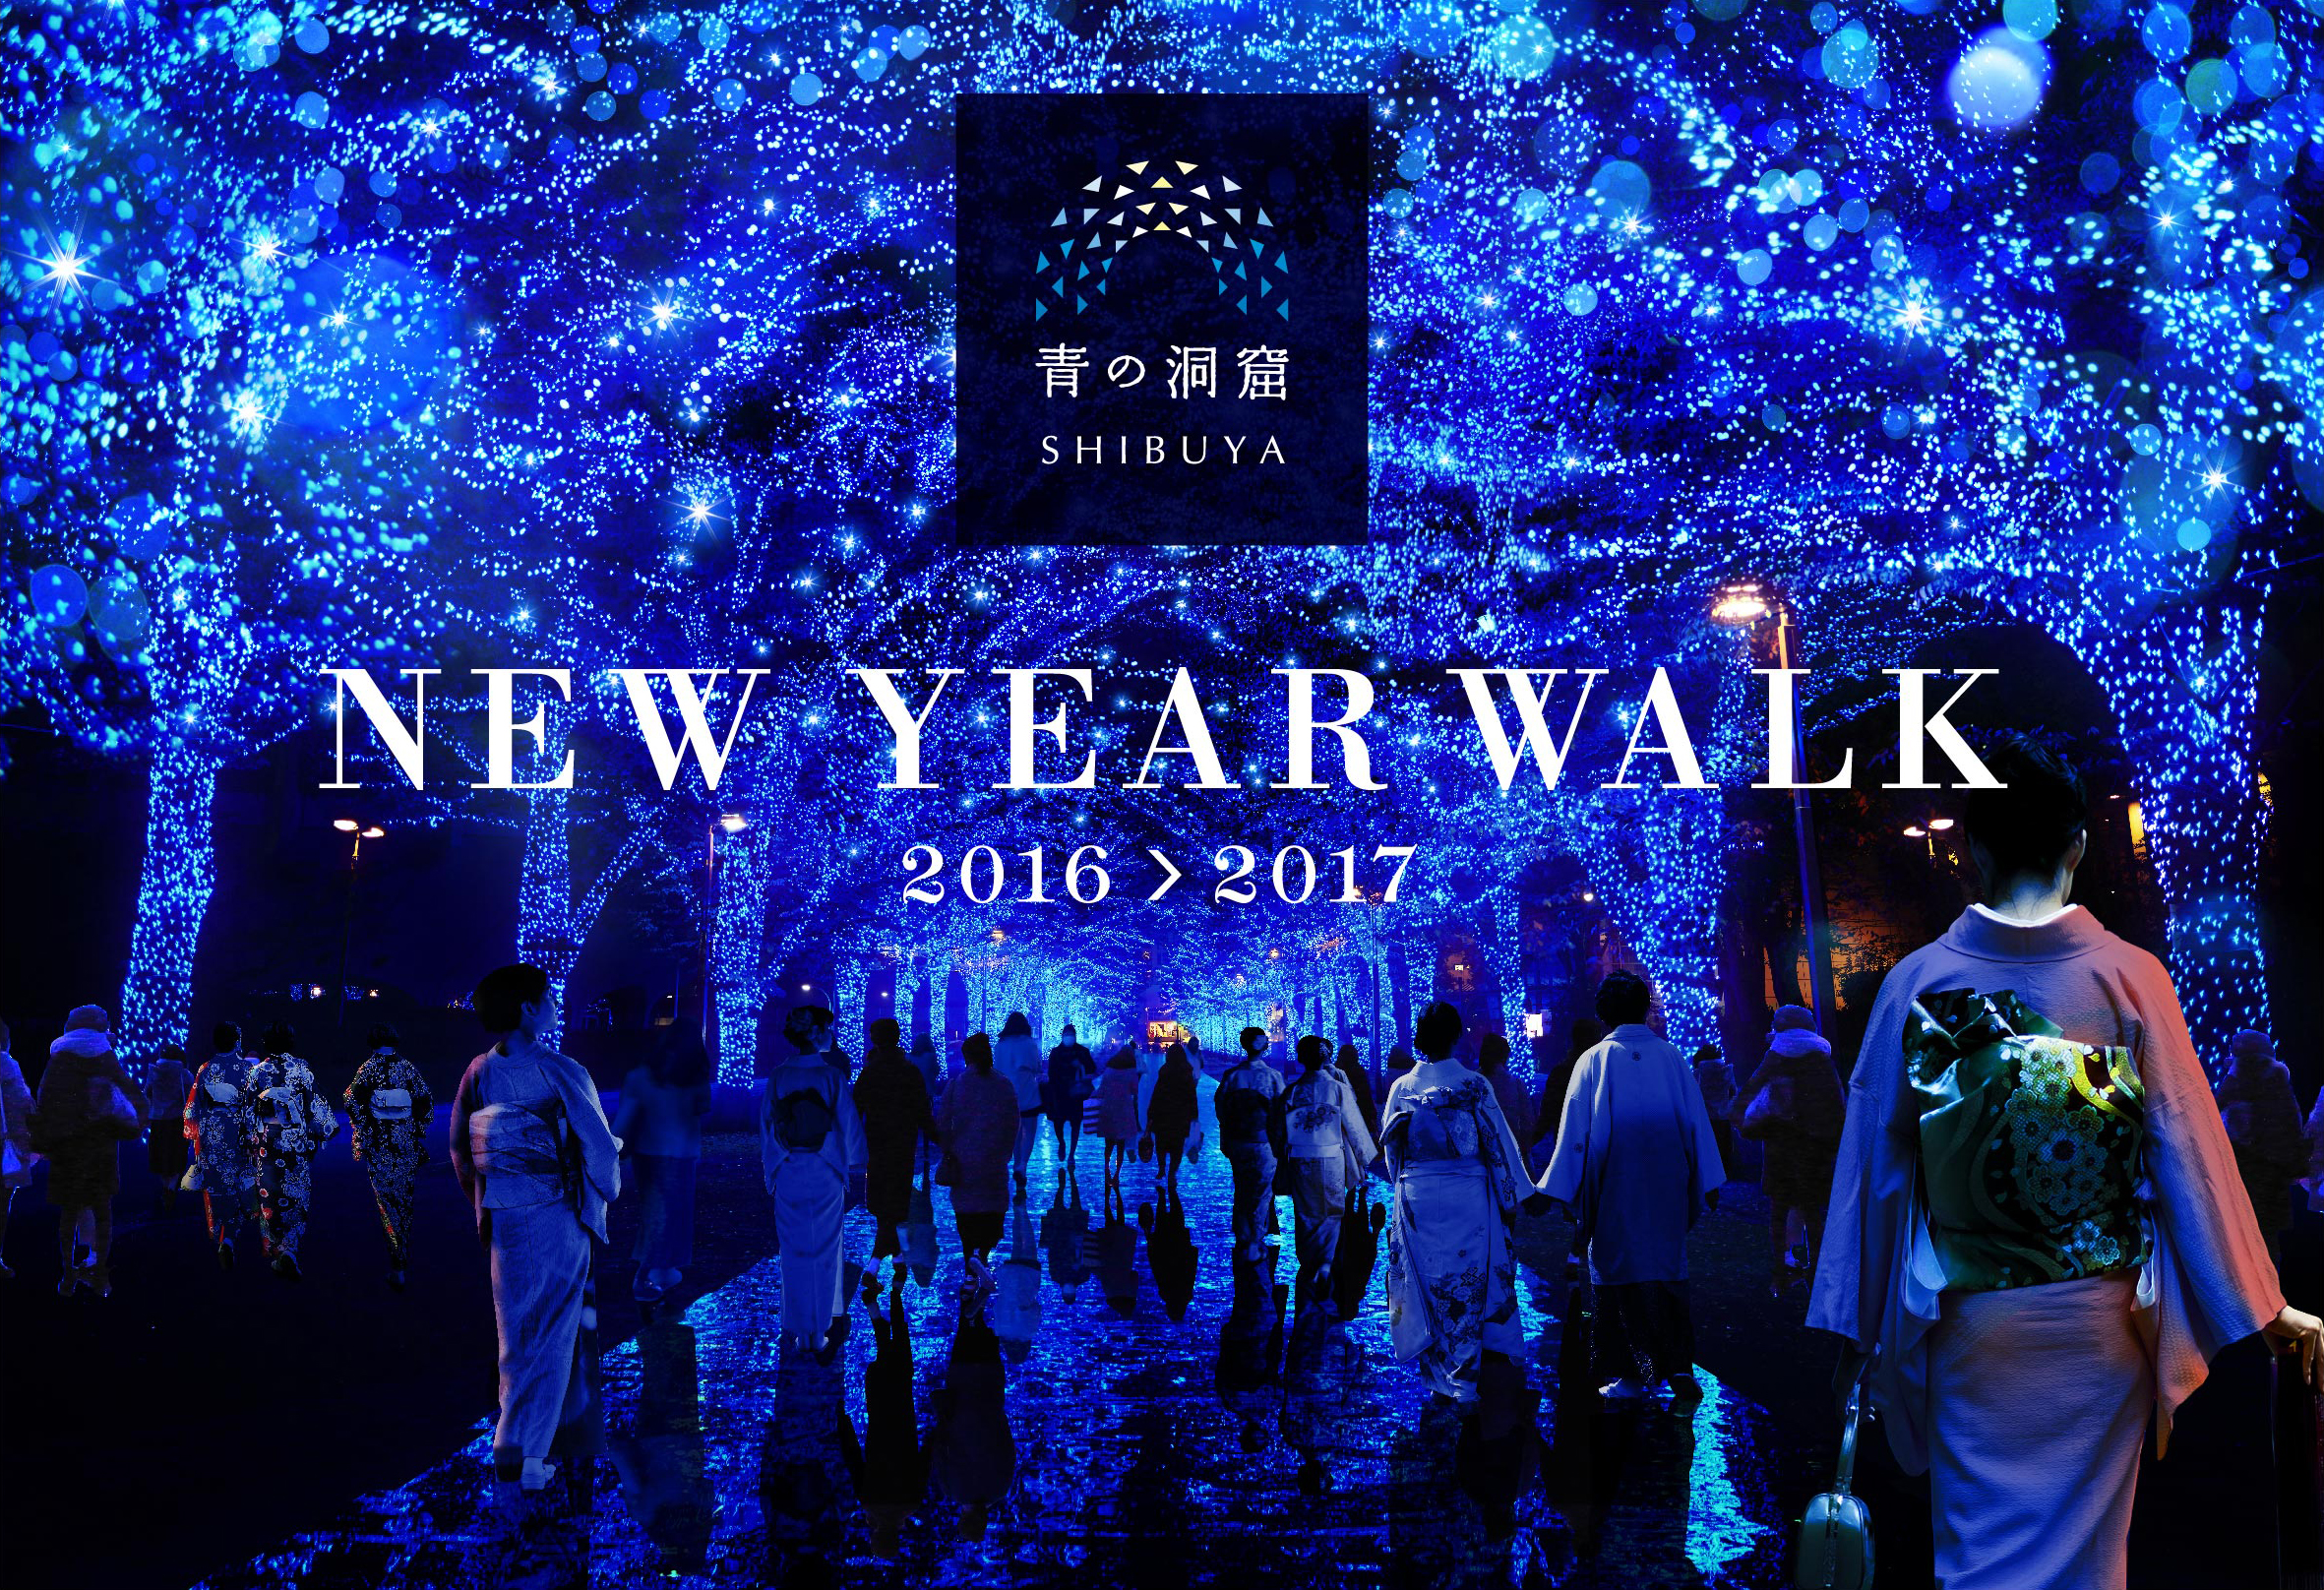 来場者数180万人突破 3日間で36万人が訪れた超大盛況のクリスマスイベントに引き続き 大晦日は 青の洞窟 Shibuya がオールナイト点灯 日清フーズ株式会社のプレスリリース